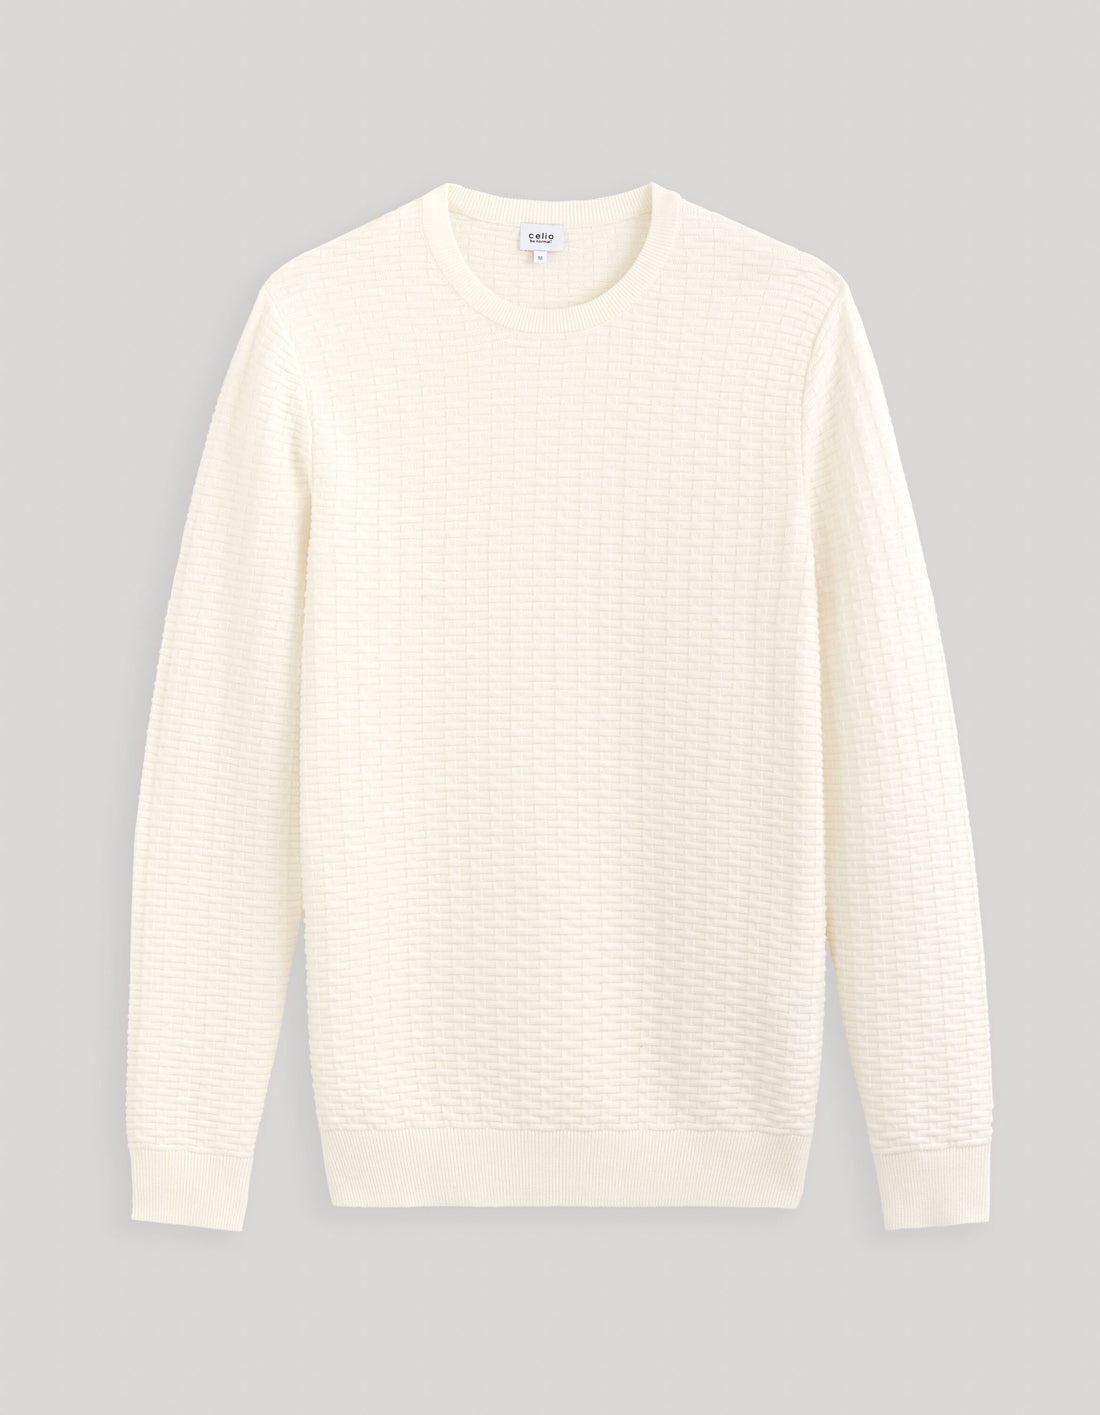 Round Neck Sweater 100% Cotton_FEWALL_ECRU_02